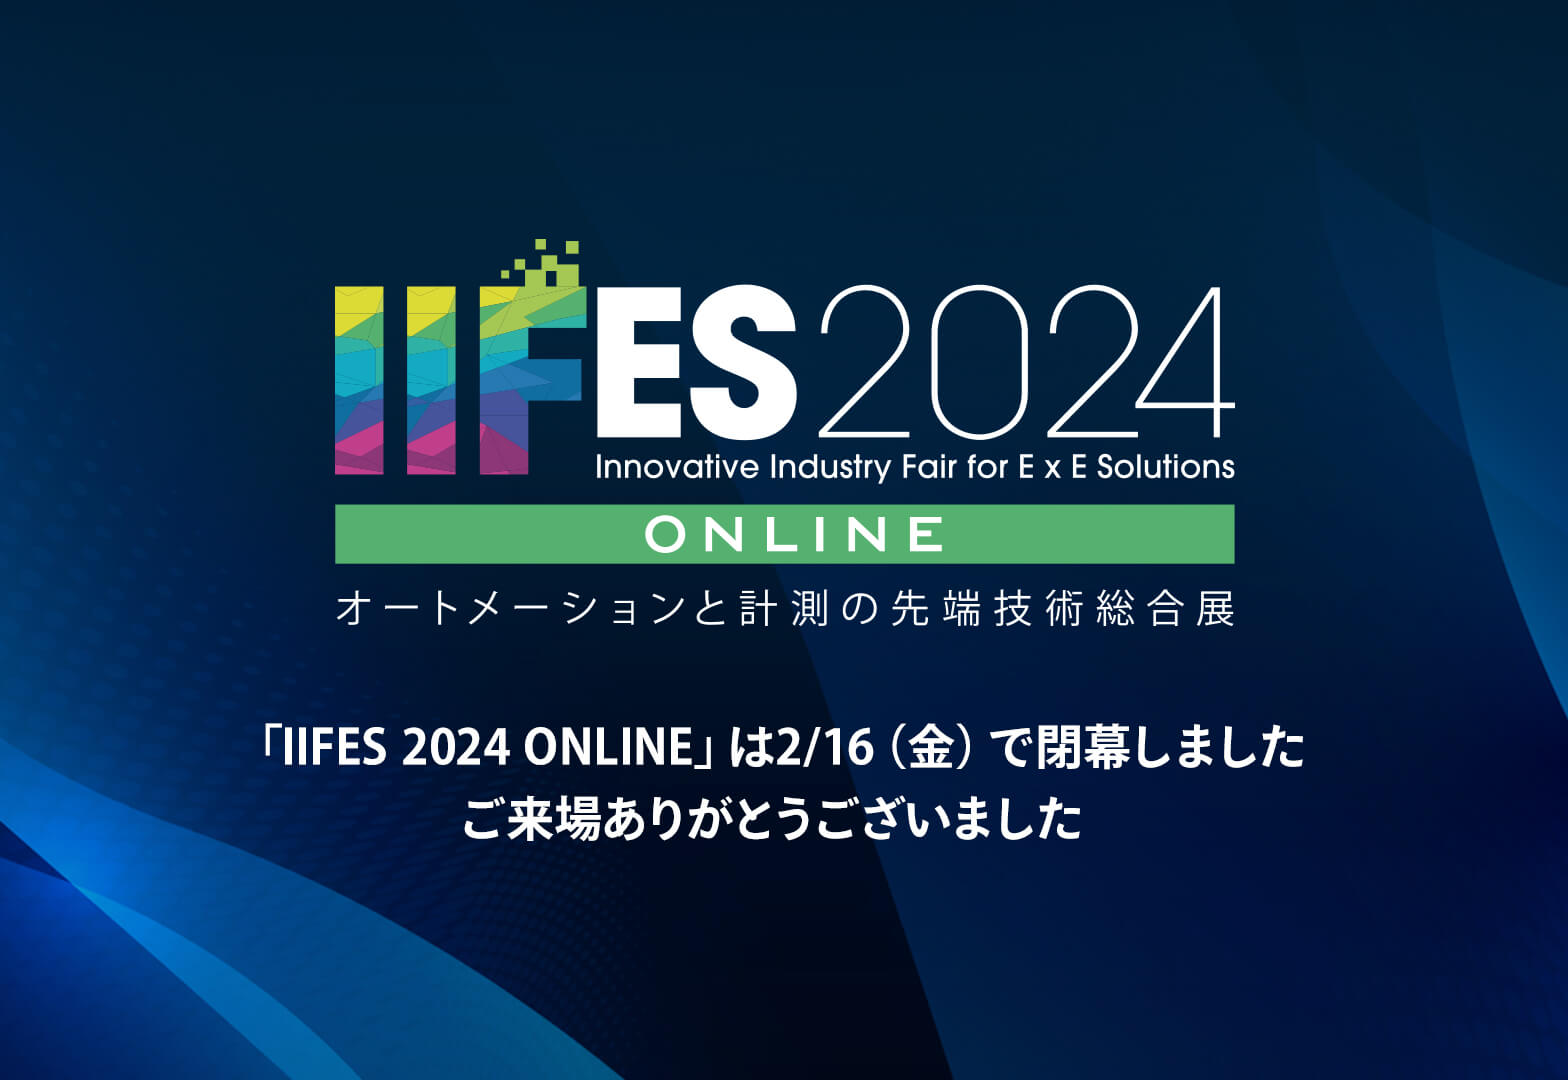 IIFES20241 online オートメーションと計測の先端技術総合展 「IIFES 2024 ONLINE」は2/16（金）で閉幕しました ご来場ありがとうございました